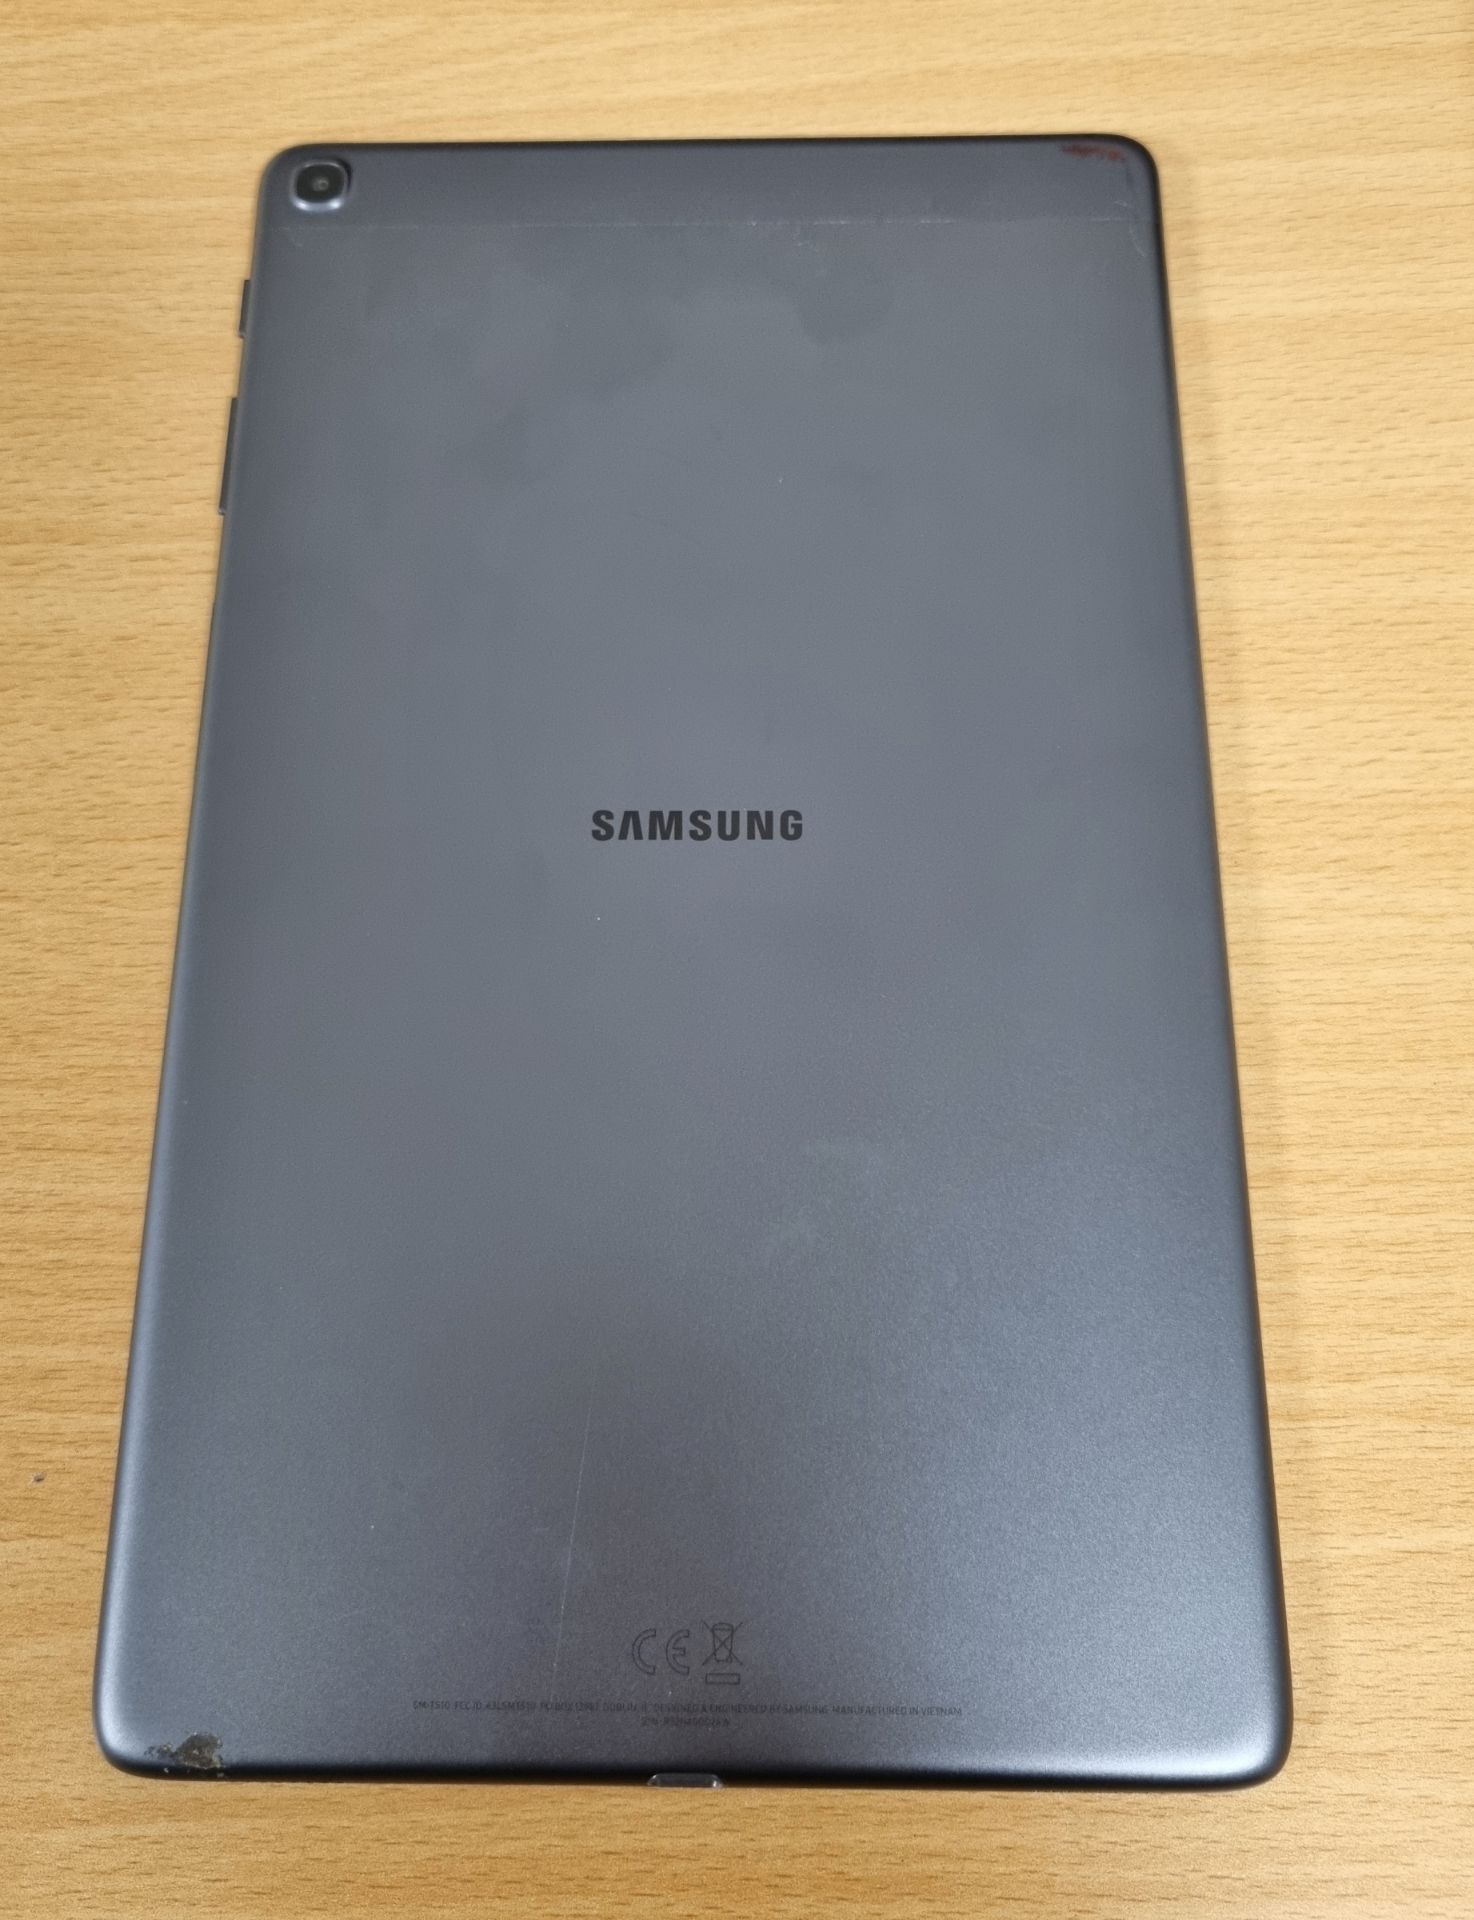 Samsung Galaxy Tab A SM-T510, 10.1 inch Tablet, Wifi, 32GB, 2GB RAM, 8MP AF + 5MP, Black - Image 4 of 9